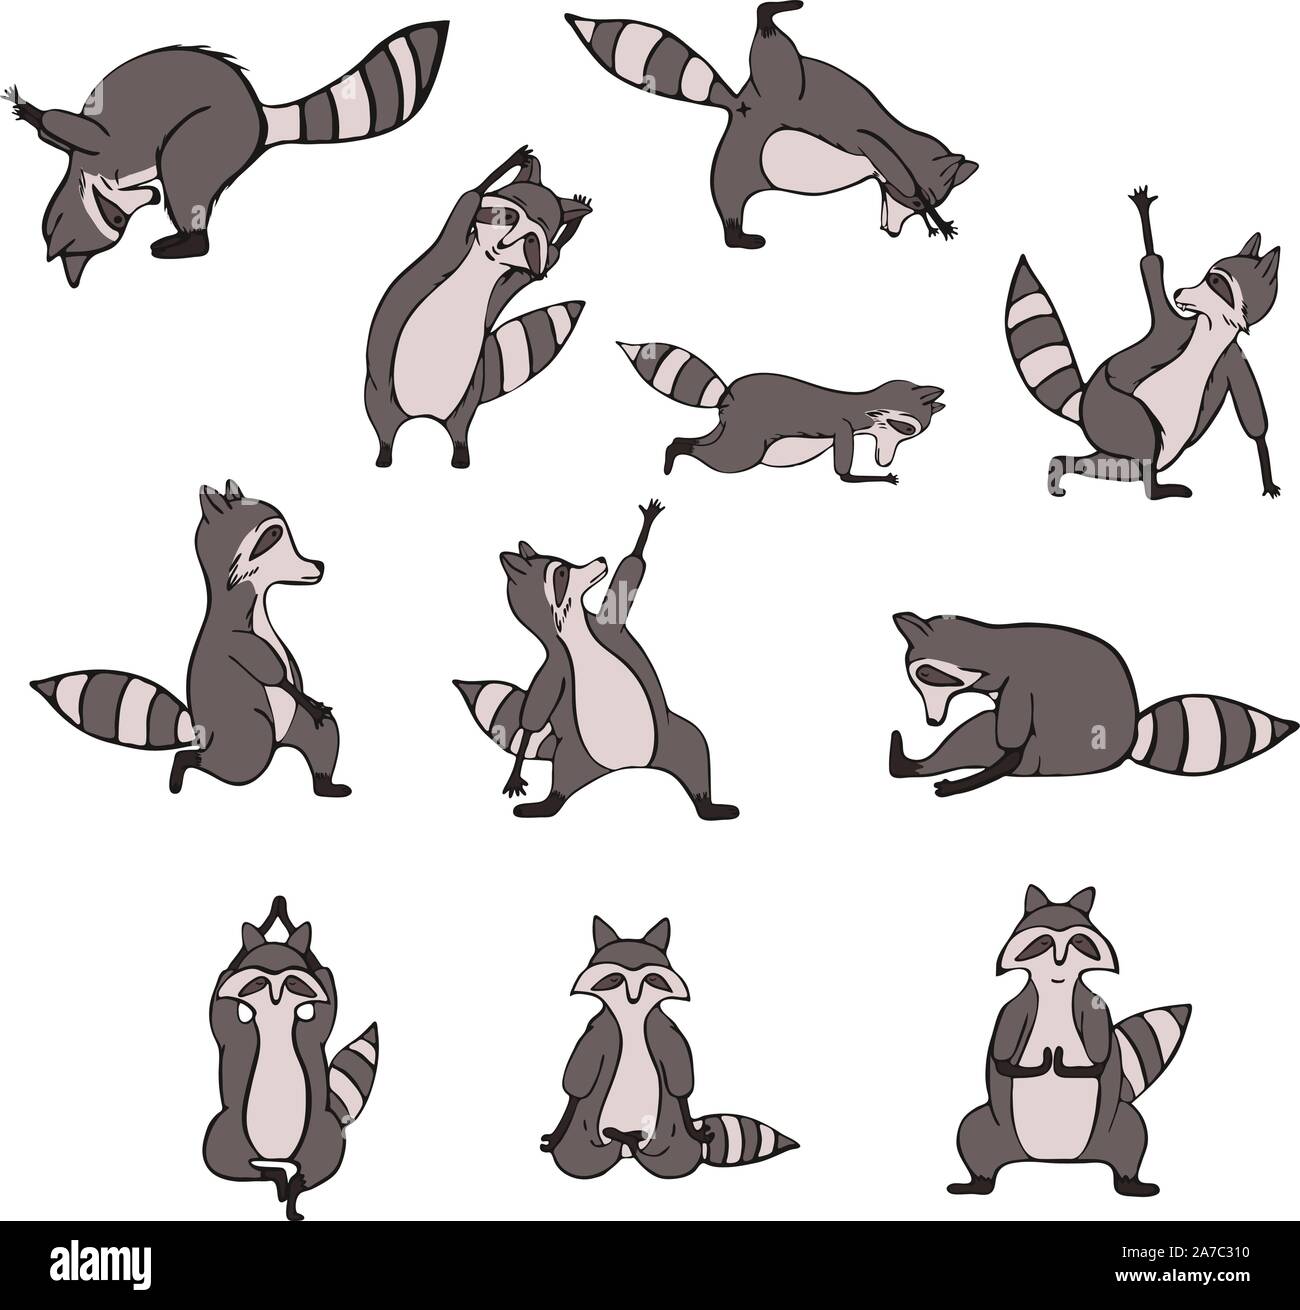 Disegnata a mano raccoon fare yoga. Asana set. Carino wildlife carattere animale fare fitness. Vettore isolato design. Illustrazione Vettoriale